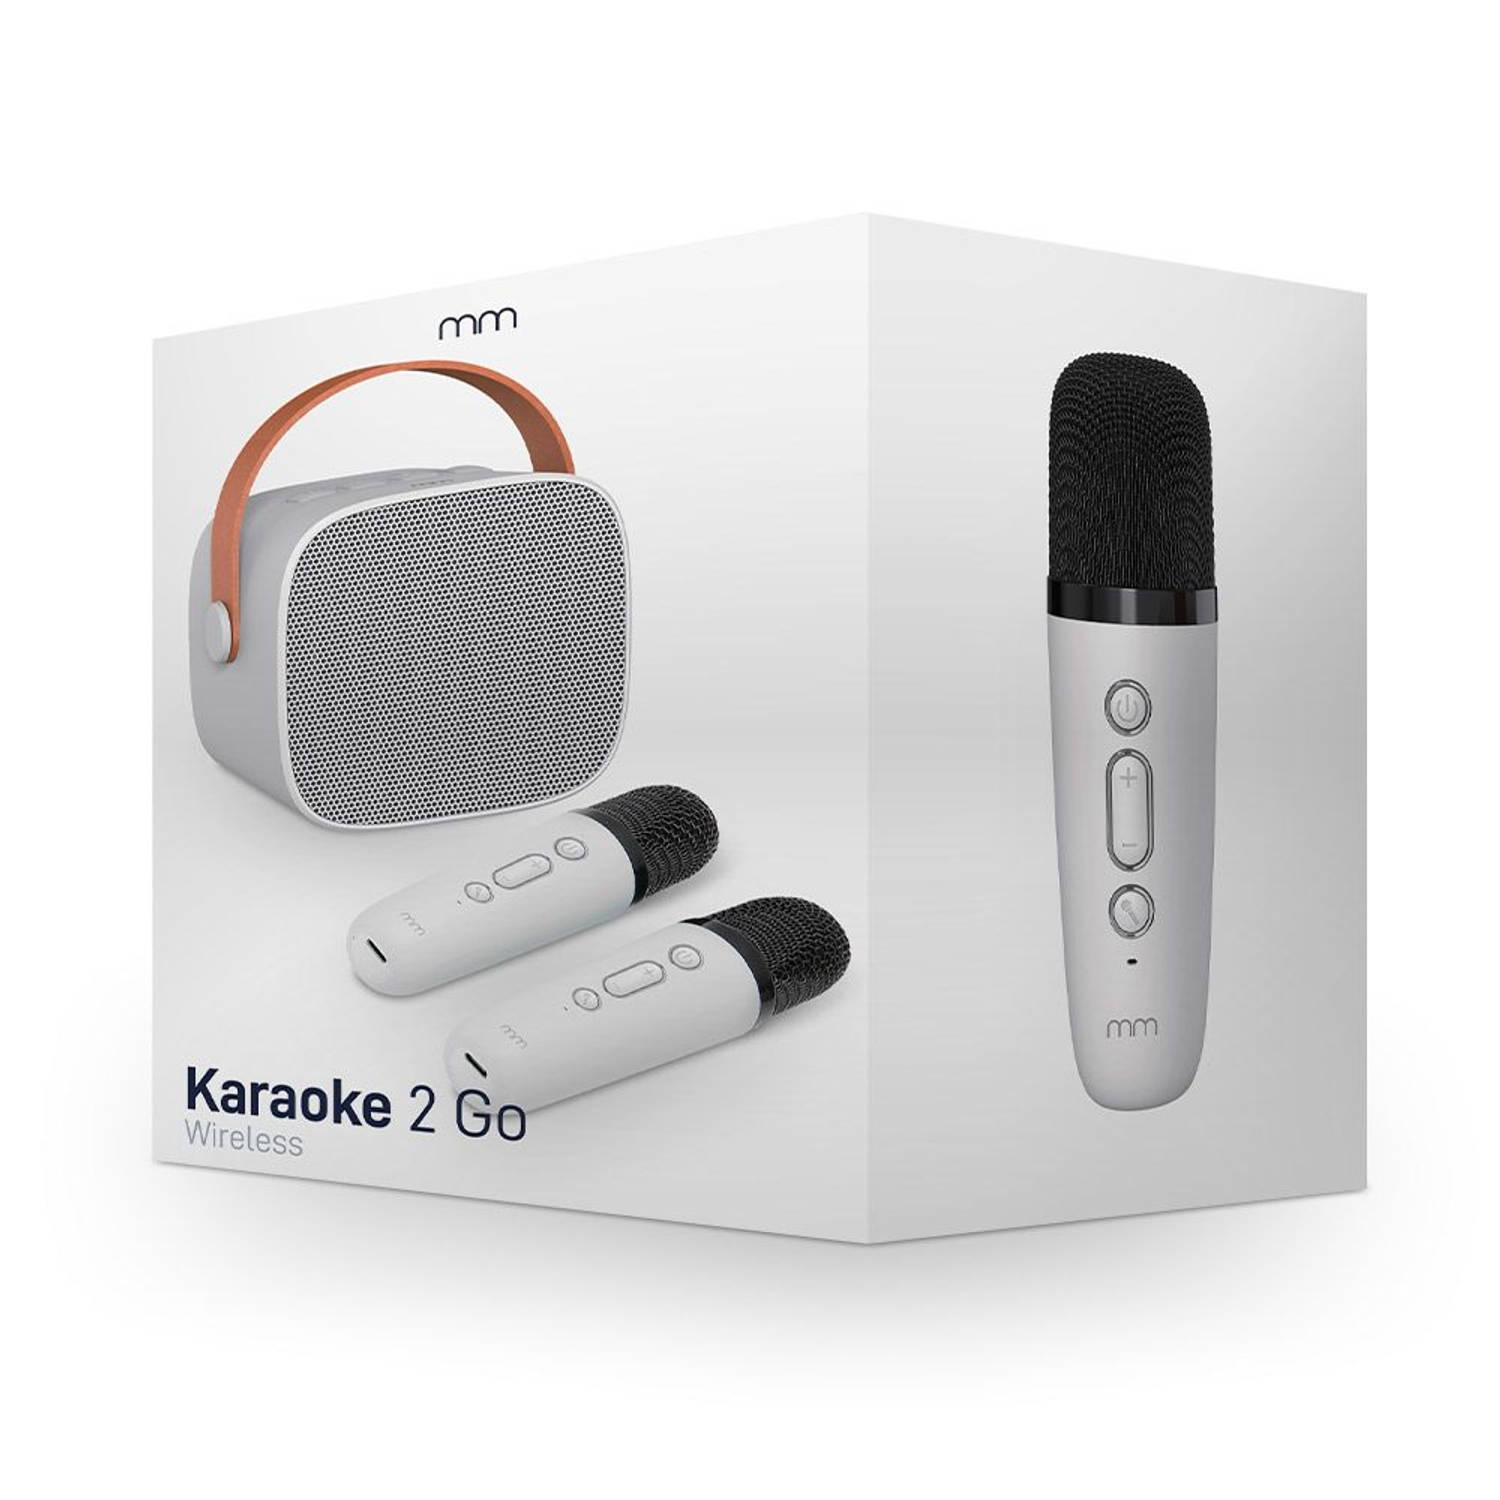 Karaoke 2 Go Zing overal waar je wilt Incl. 2 draadloze microfoons 8,5 x 7,5 x 6,5 cm Speaker Karaok